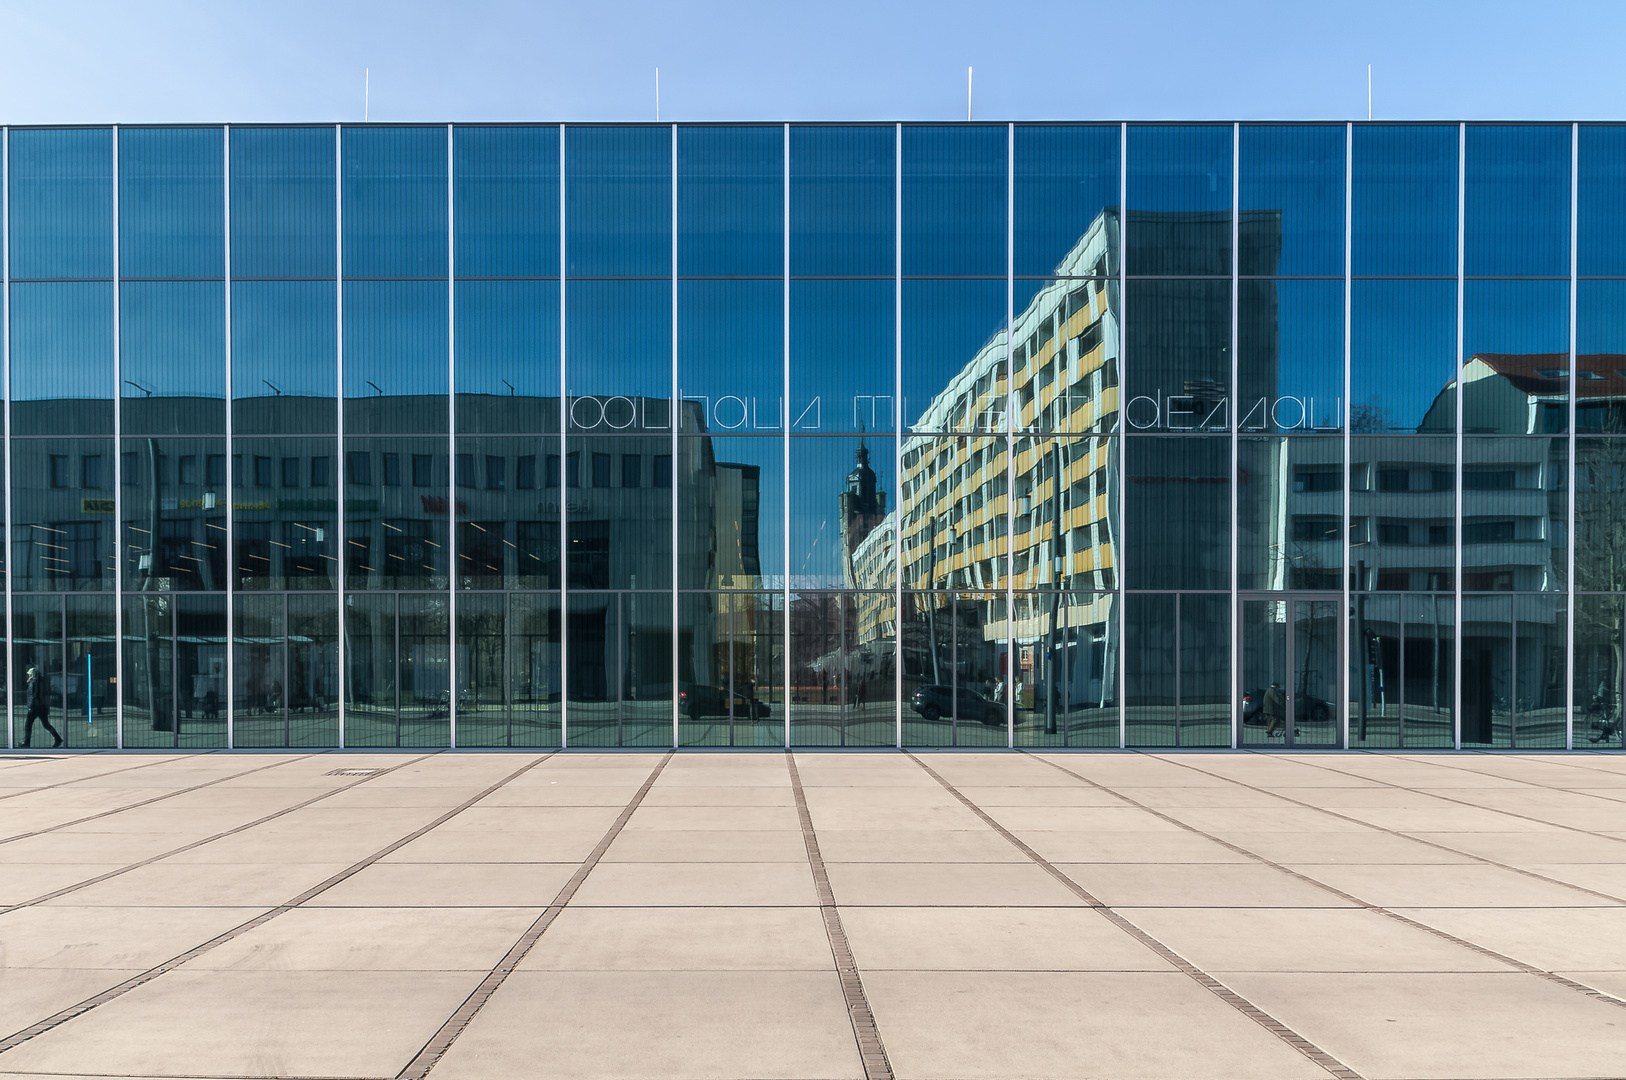 Dessau-Roßlau das neue "Bauhausmuseum"